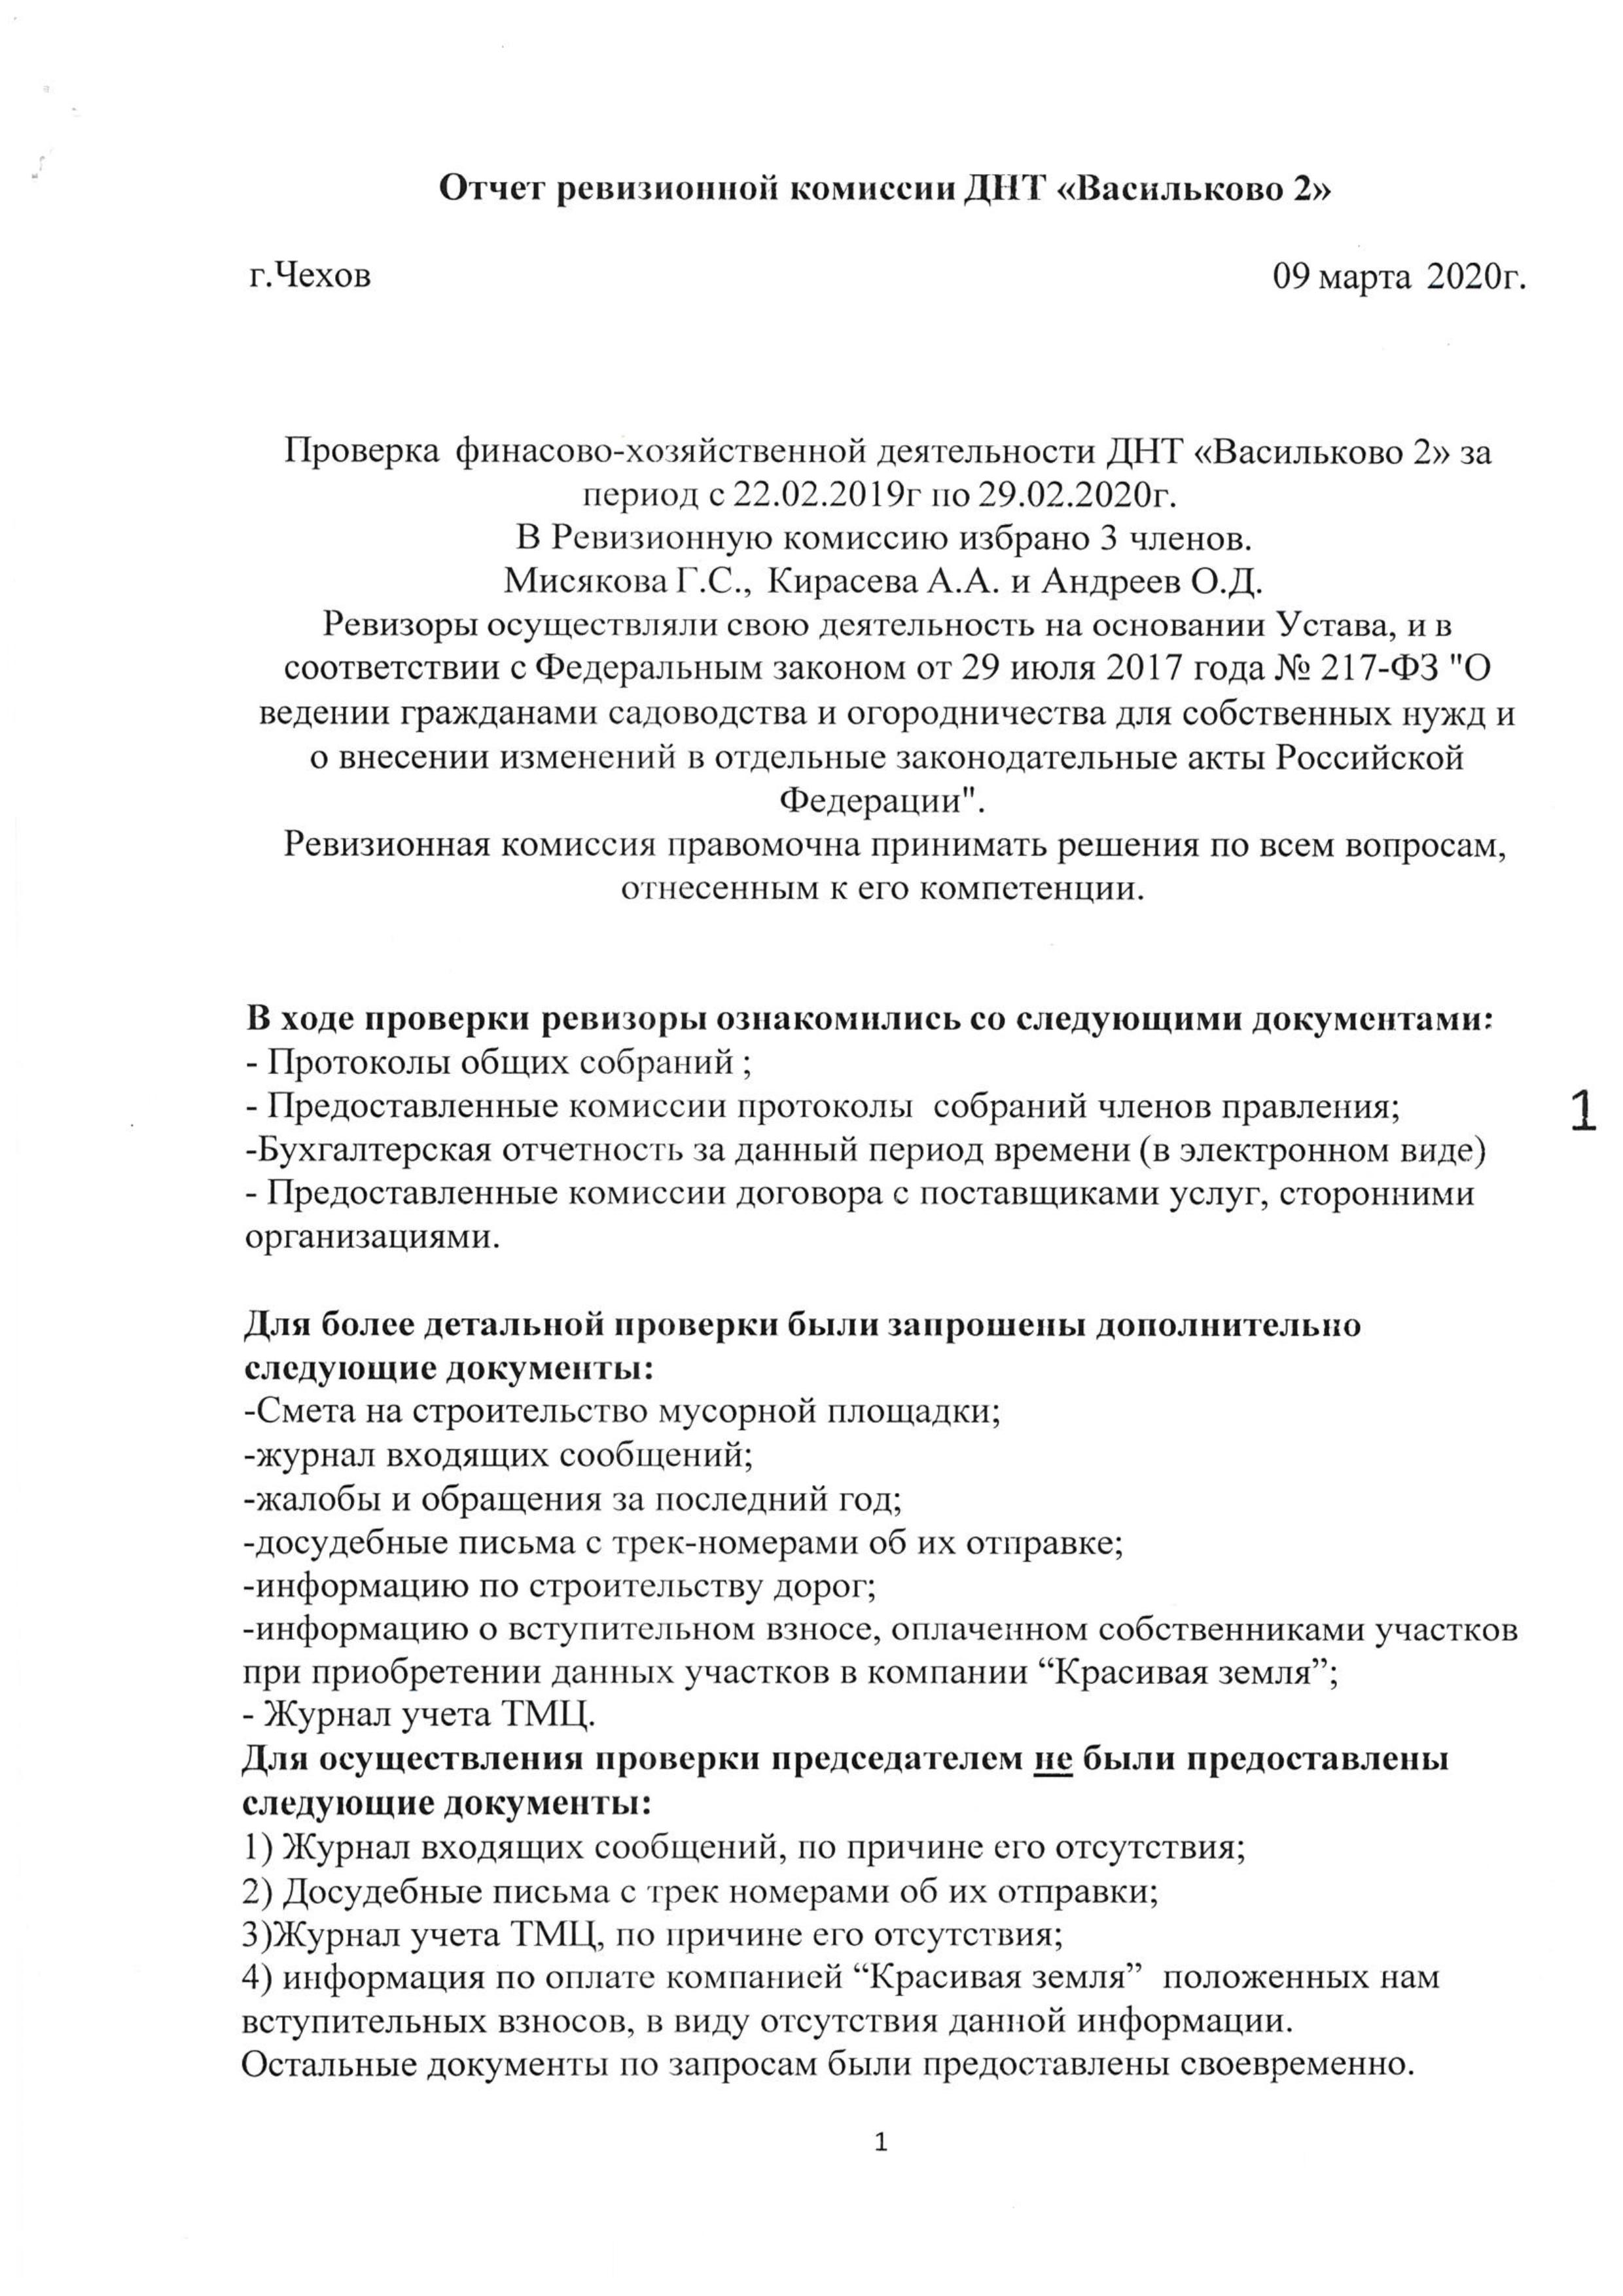 Отчет ревизионной комиссии Васильково-2 14.03.2020 страница 1